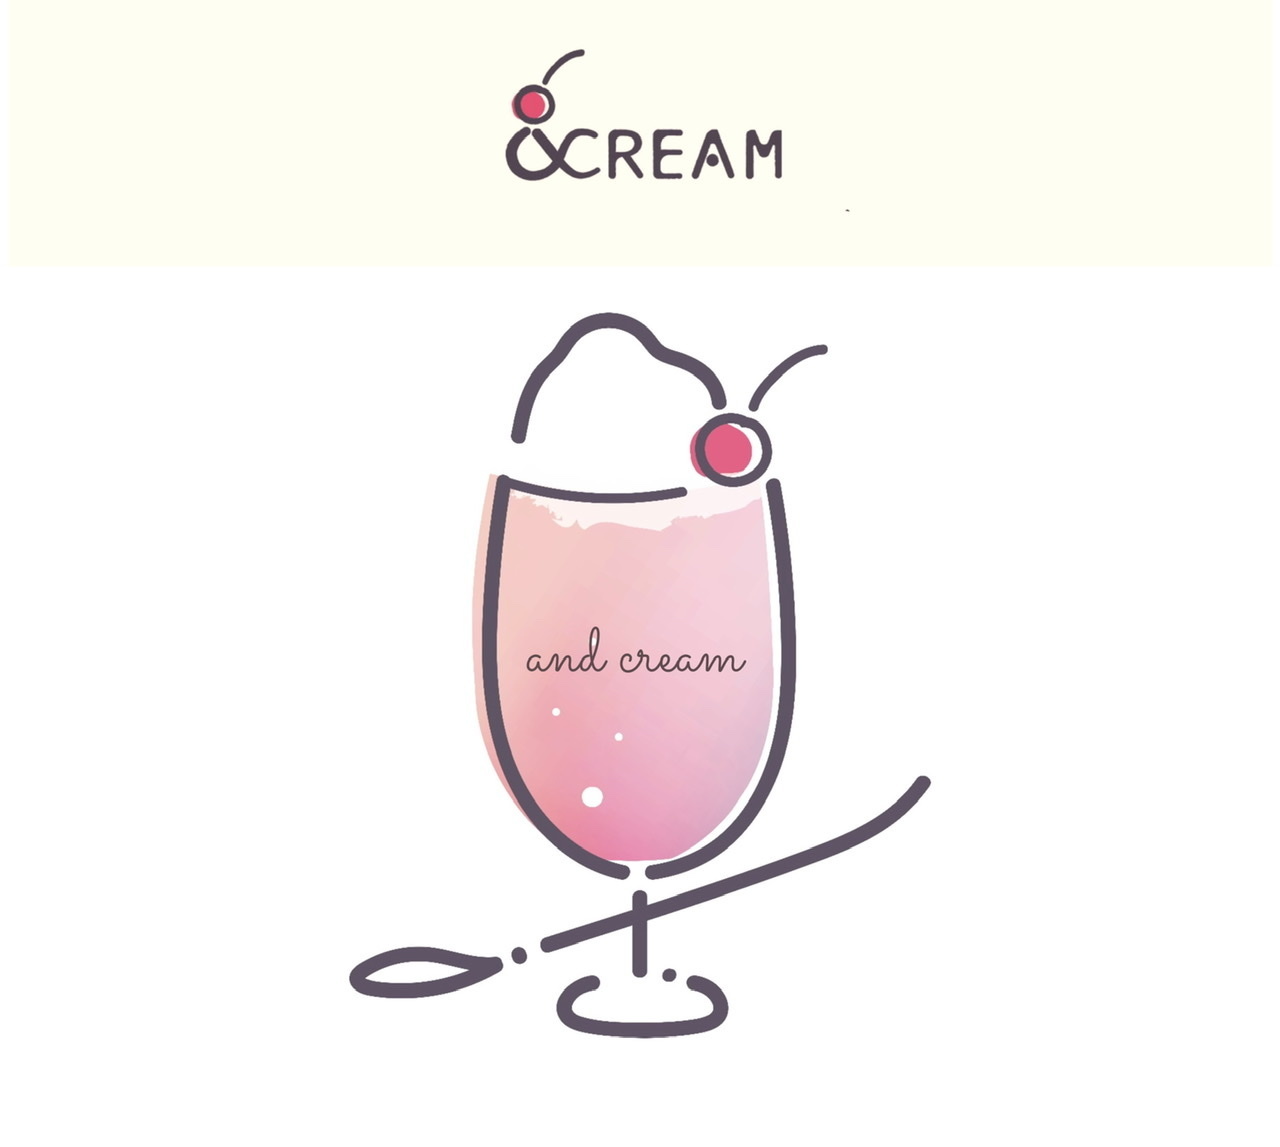  \ ＆ cream /